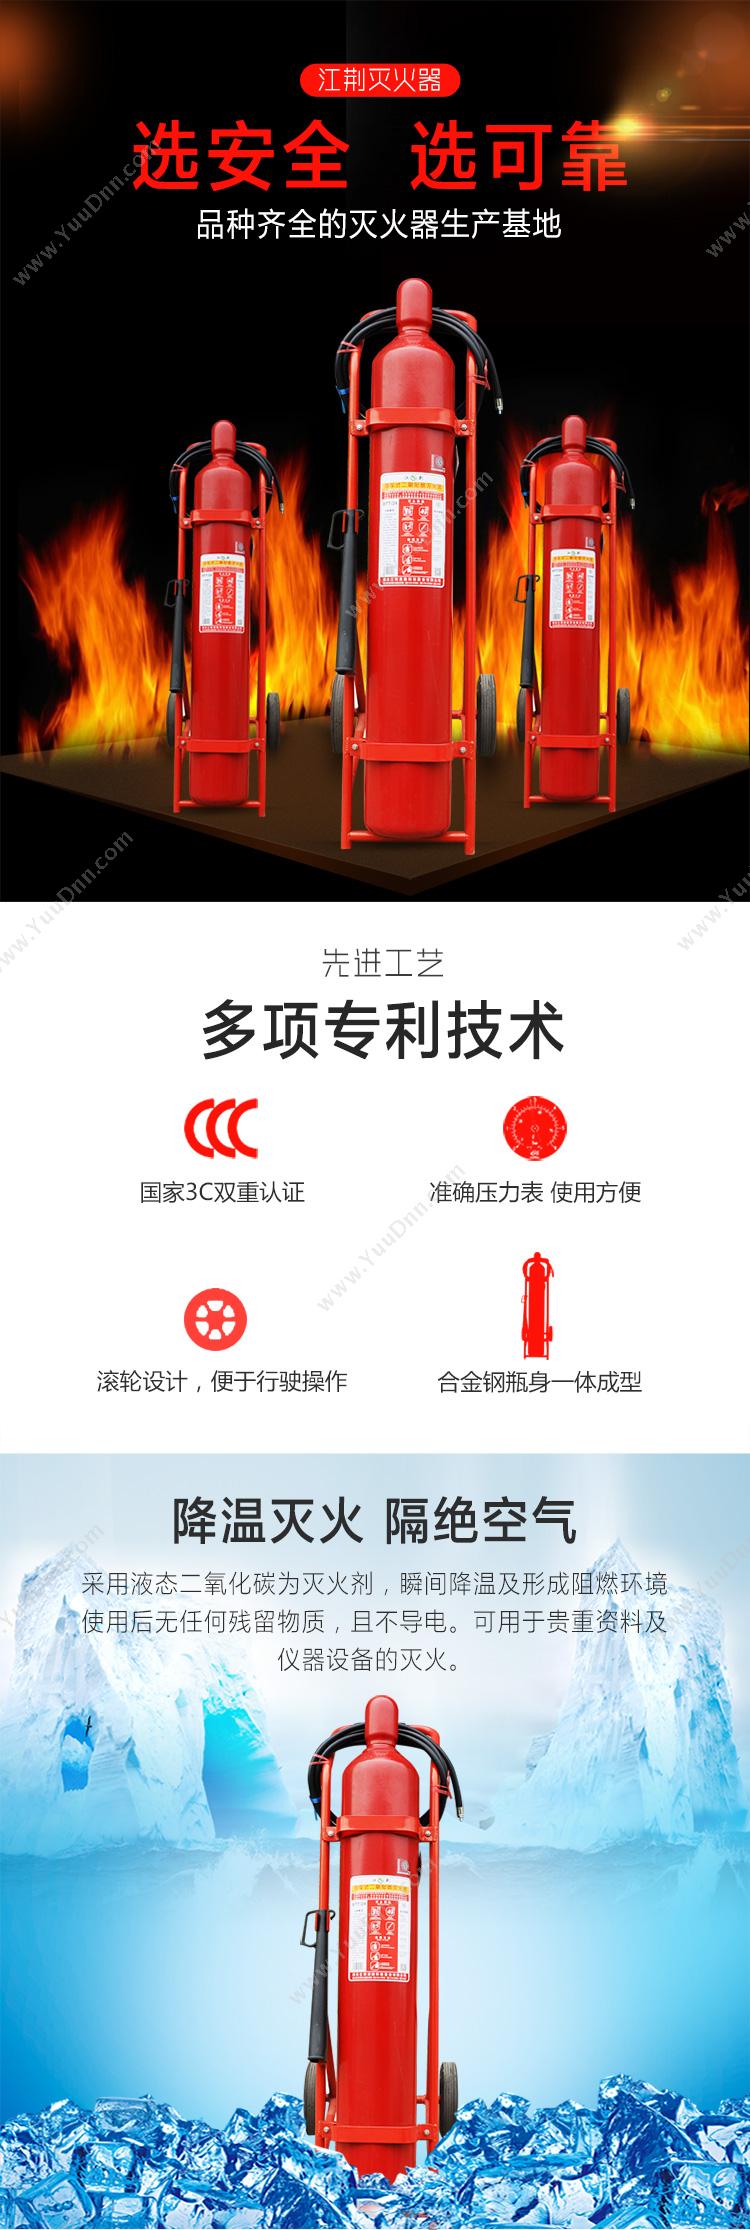 江荆 JiangJing MT24 推车 二氧化碳推车